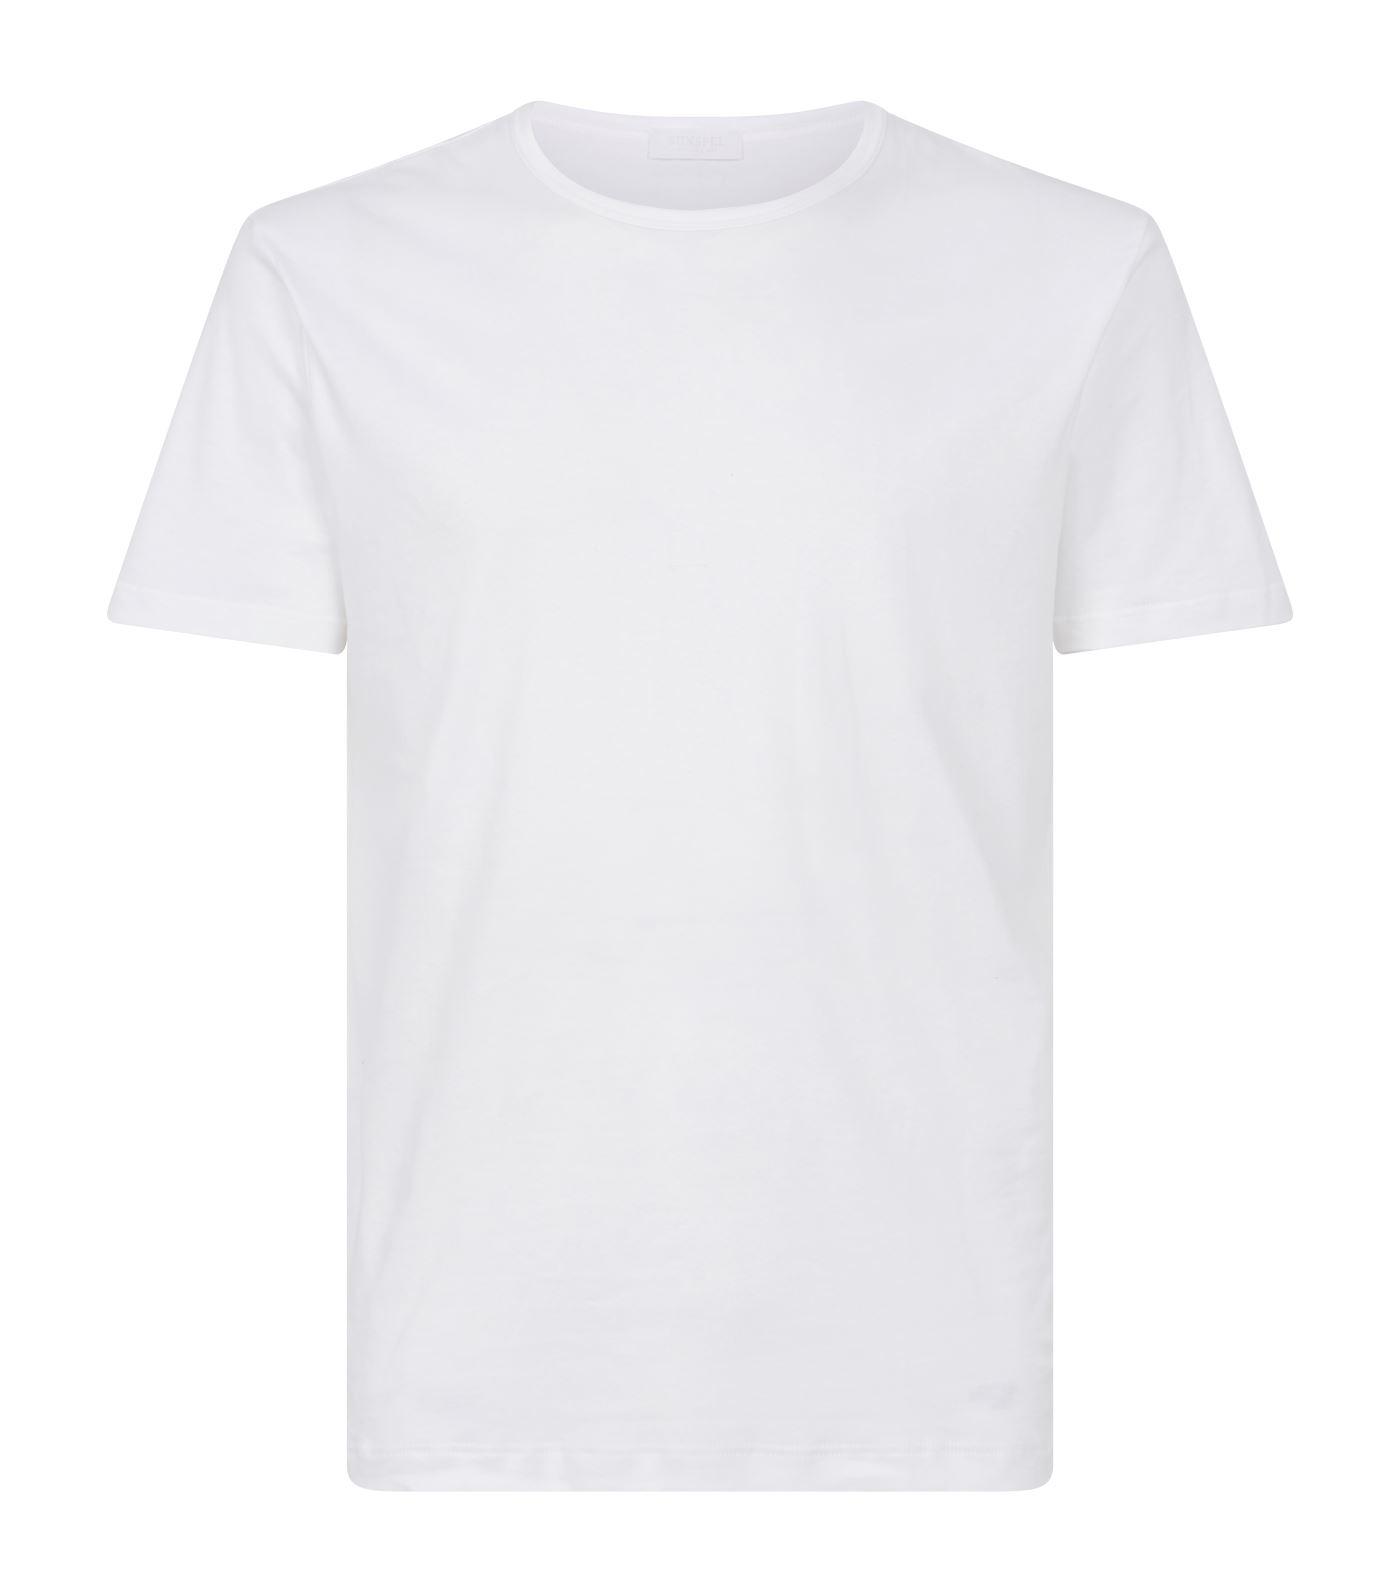 Sunspel Cotton T-shirt in White for Men - Lyst